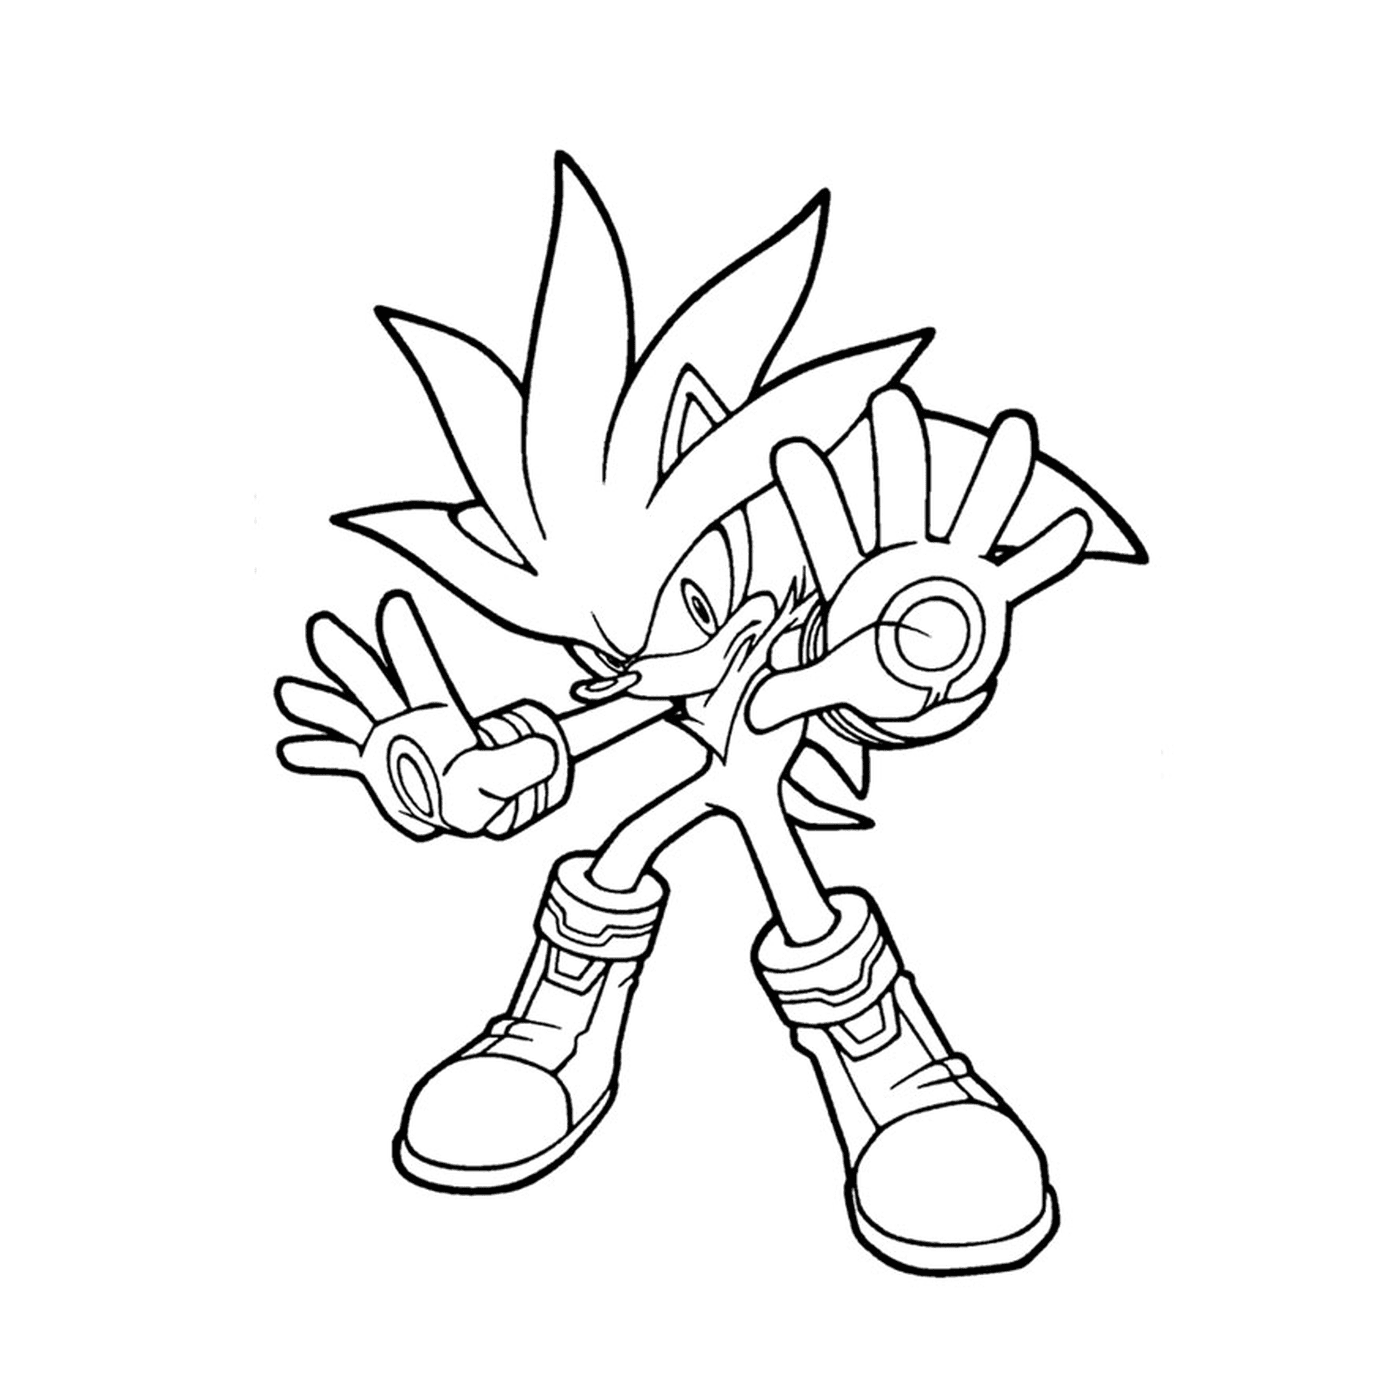   Sonic dans la série animée Sonic X 